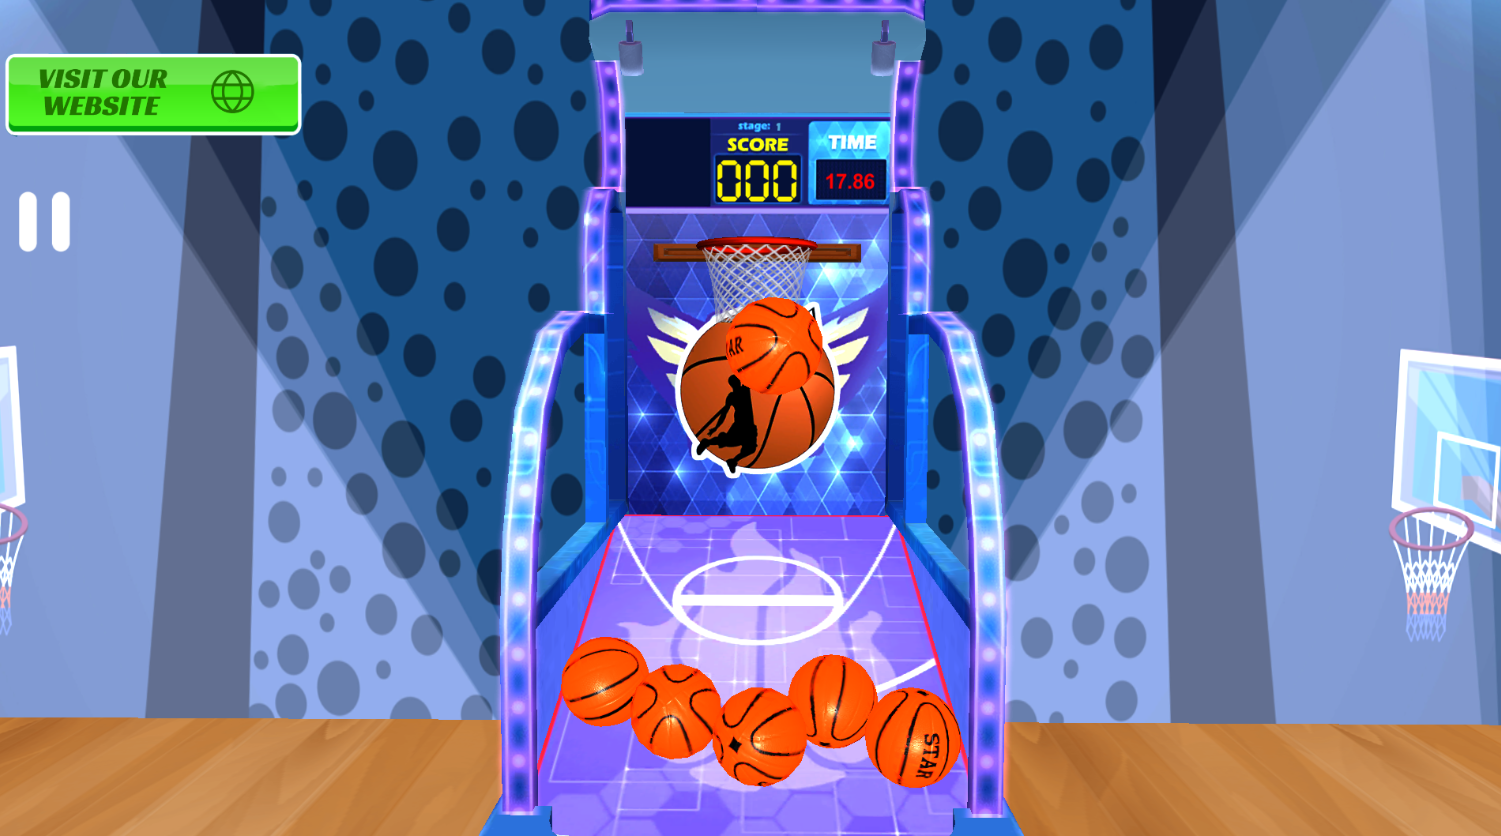 NBA APP screenshot game